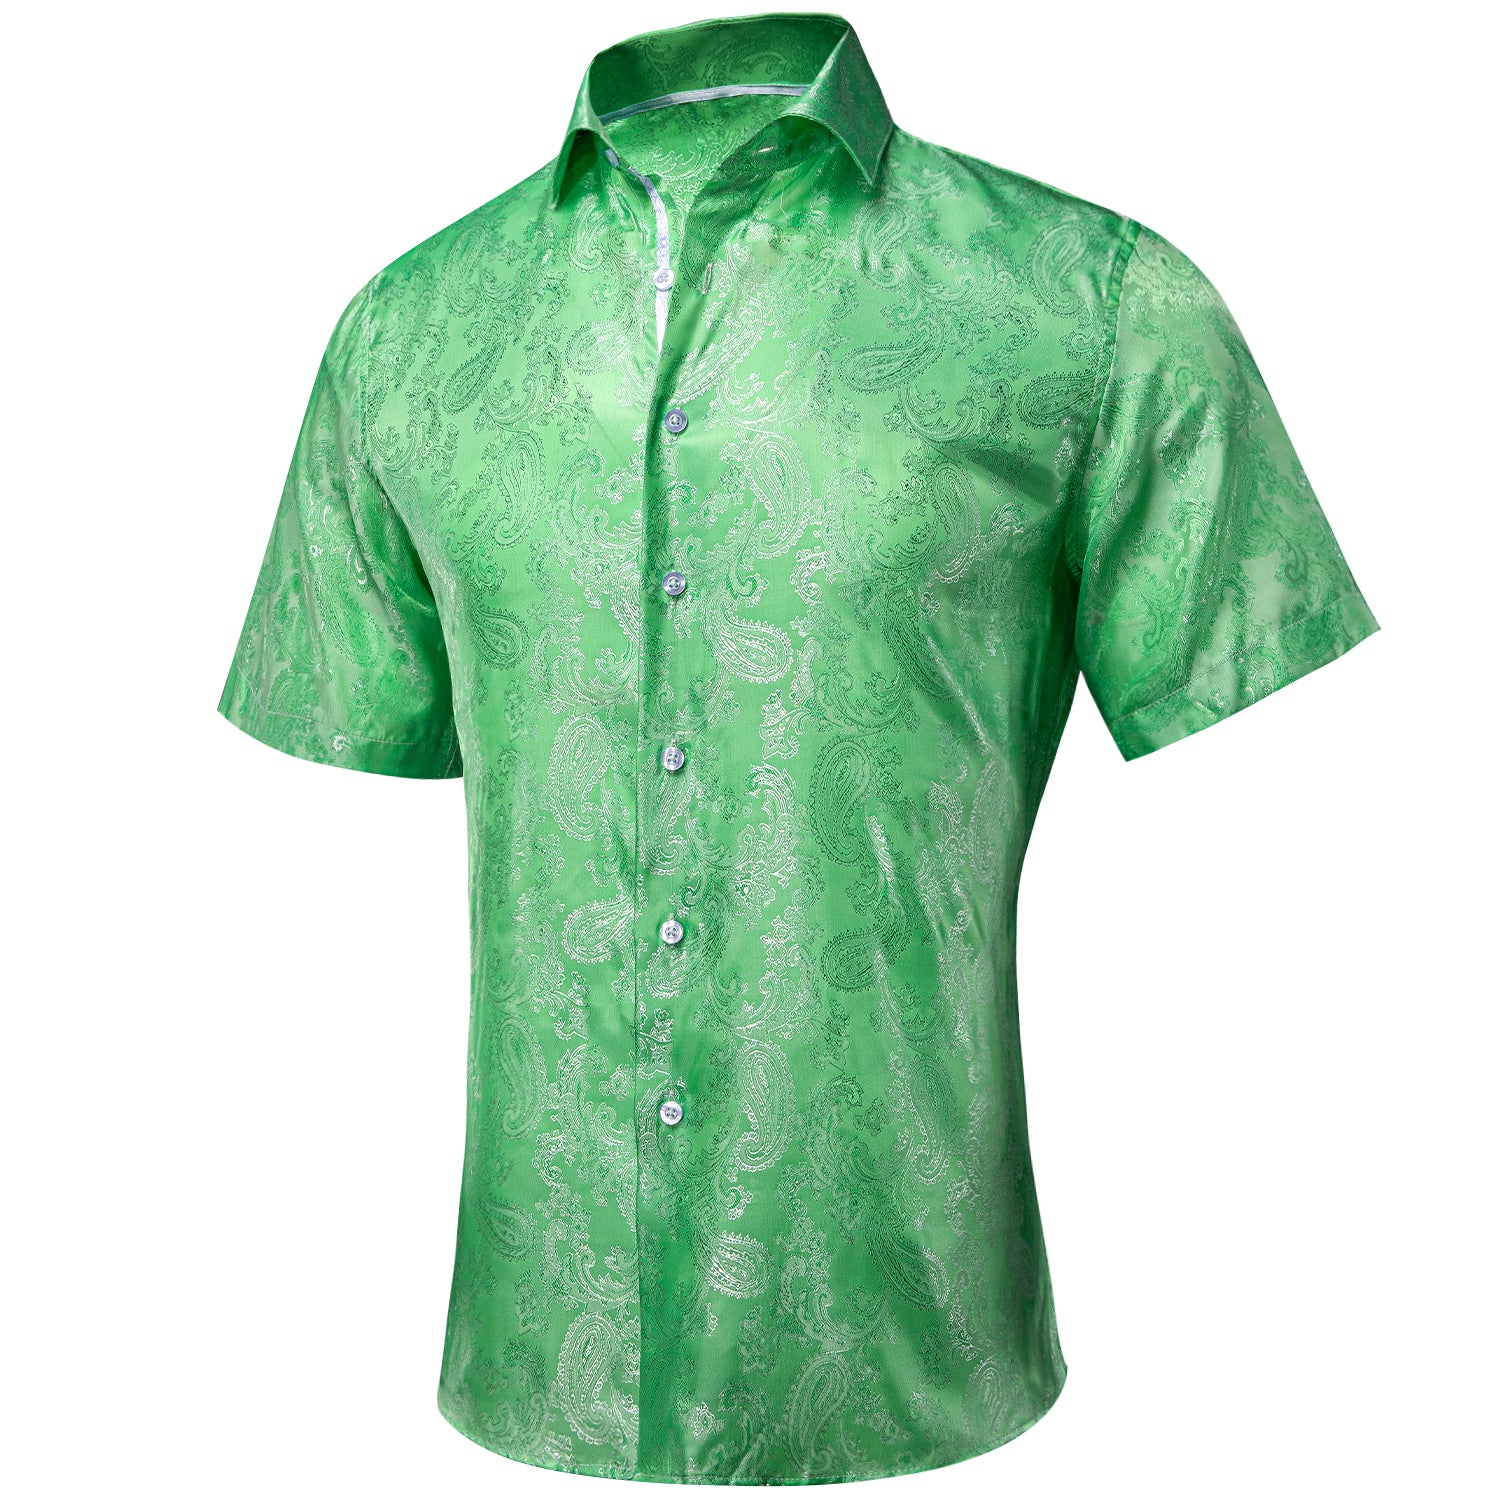 Clearance Sale Grass Green Paisley Silk Men's Short Sleeve Shirt